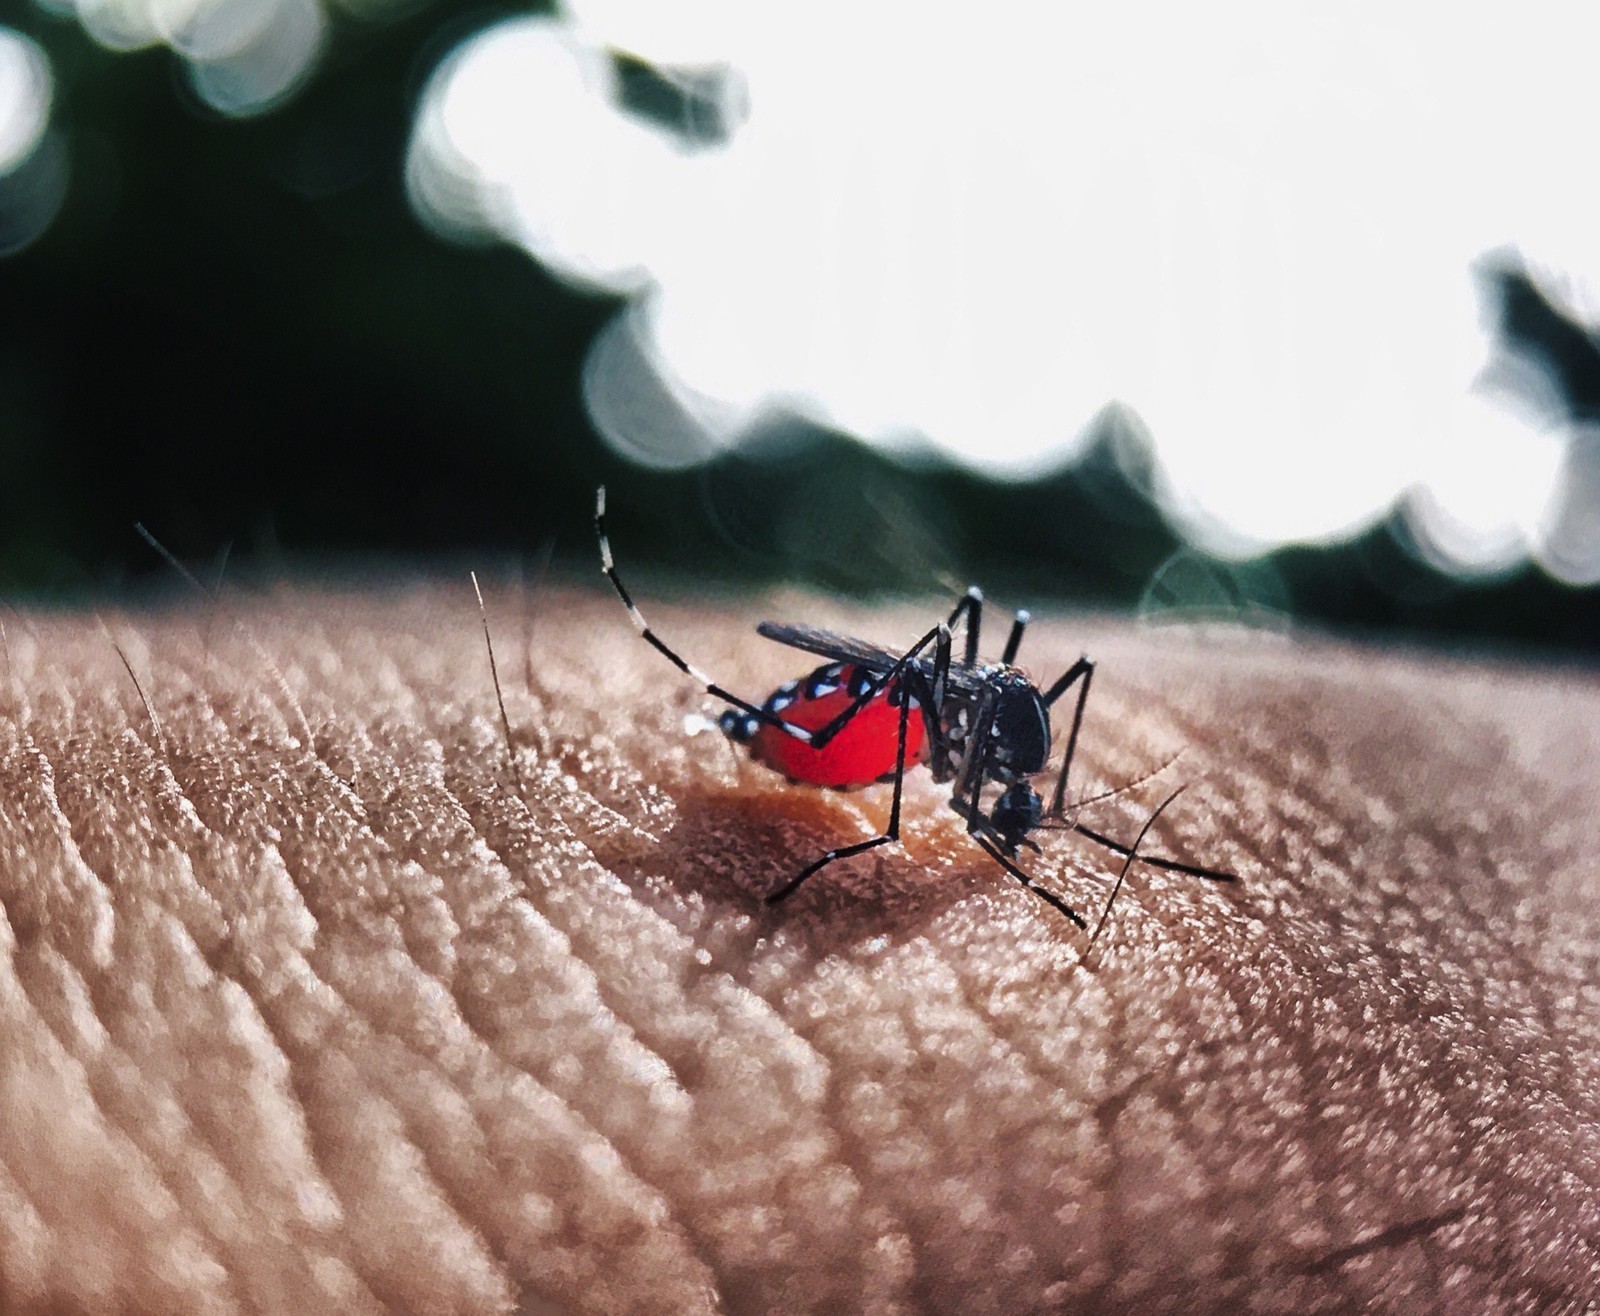 Ministério da Saúde diz que 11 estados poderão ter surto de dengue em 2020